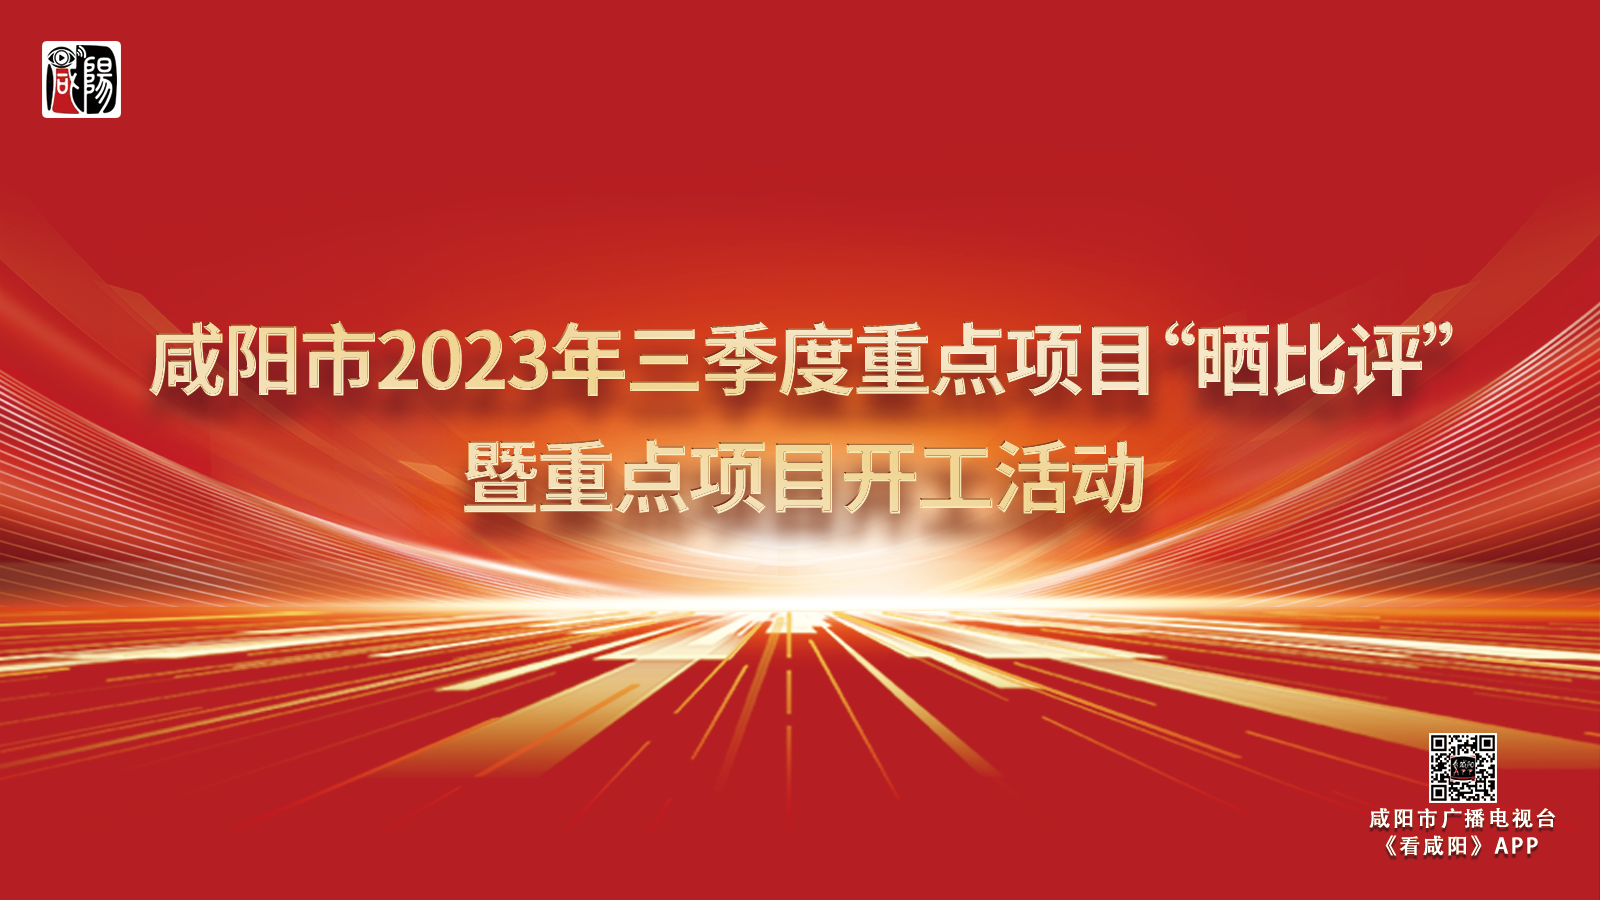 图文直播丨咸阳市2023年三季度重点项目“晒比评”暨重点项目开工活动